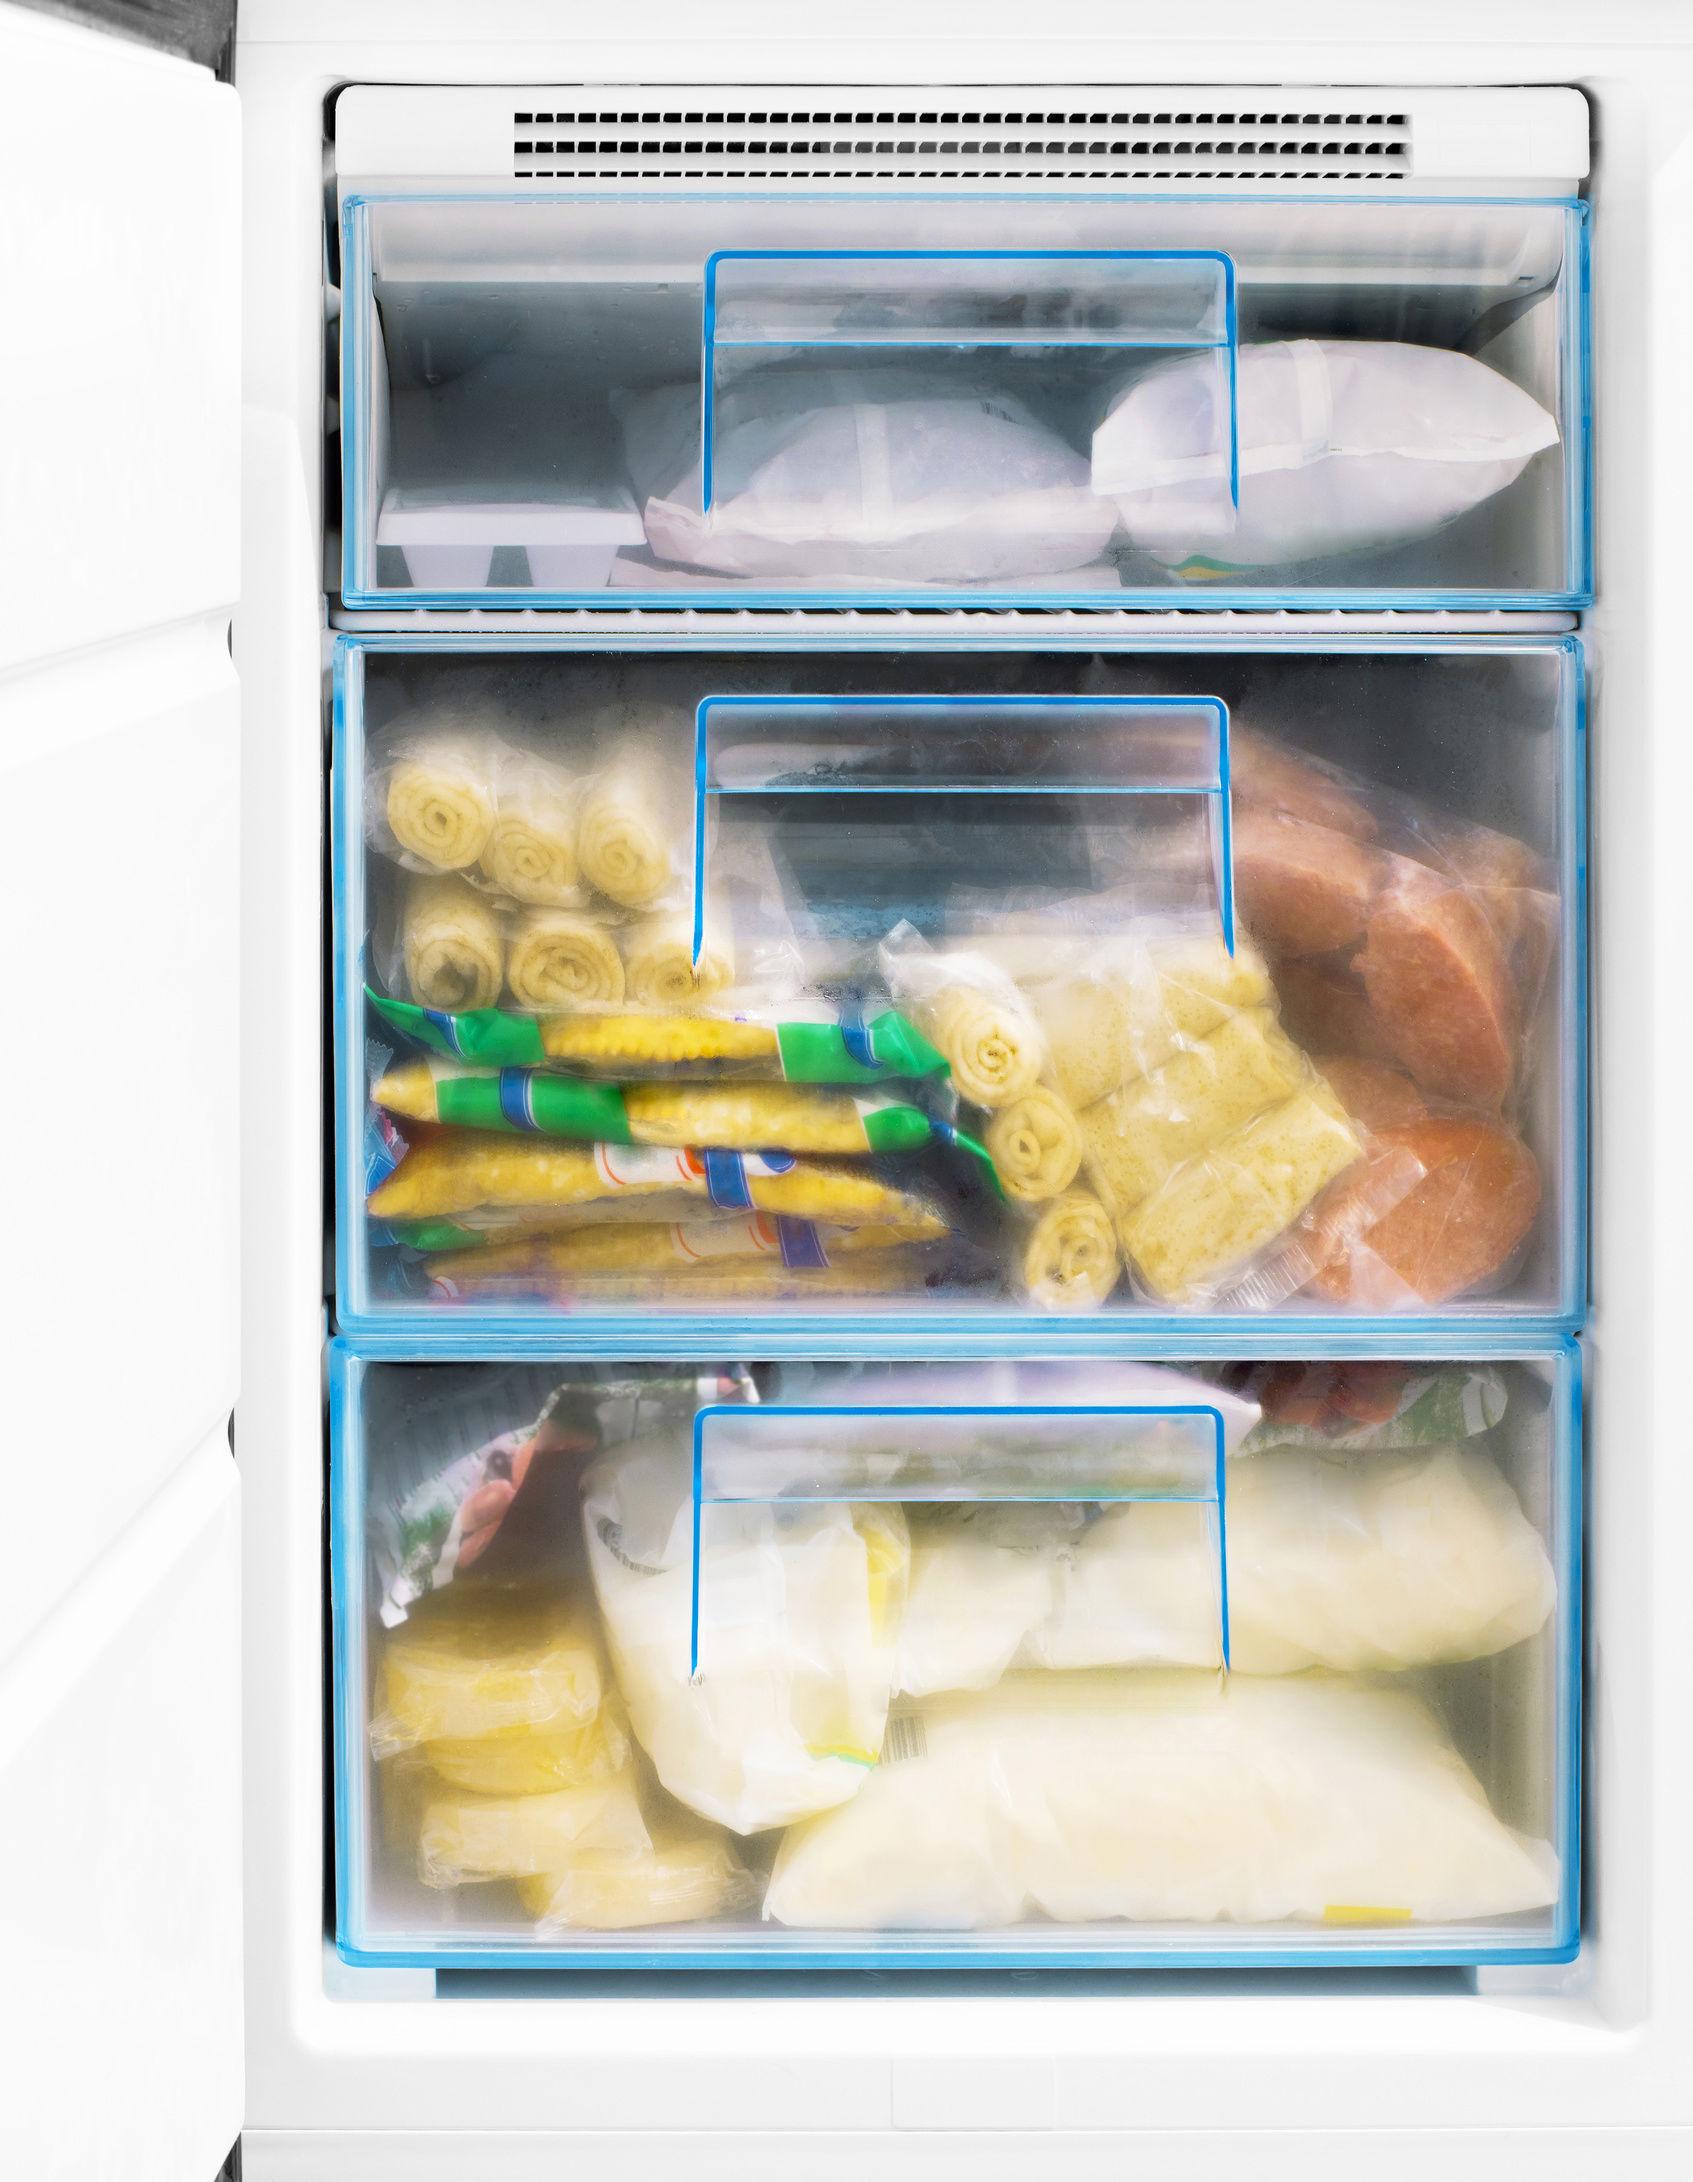 HELT FULLT: Fryseren er både mest effektiv of mes økonomisk når den er helt full. Har du ikke nok mat å fylle fryseren med, er et godt tips å legge inn noen gamle aviser for å fylle på. Foto: NTB Scanpix.